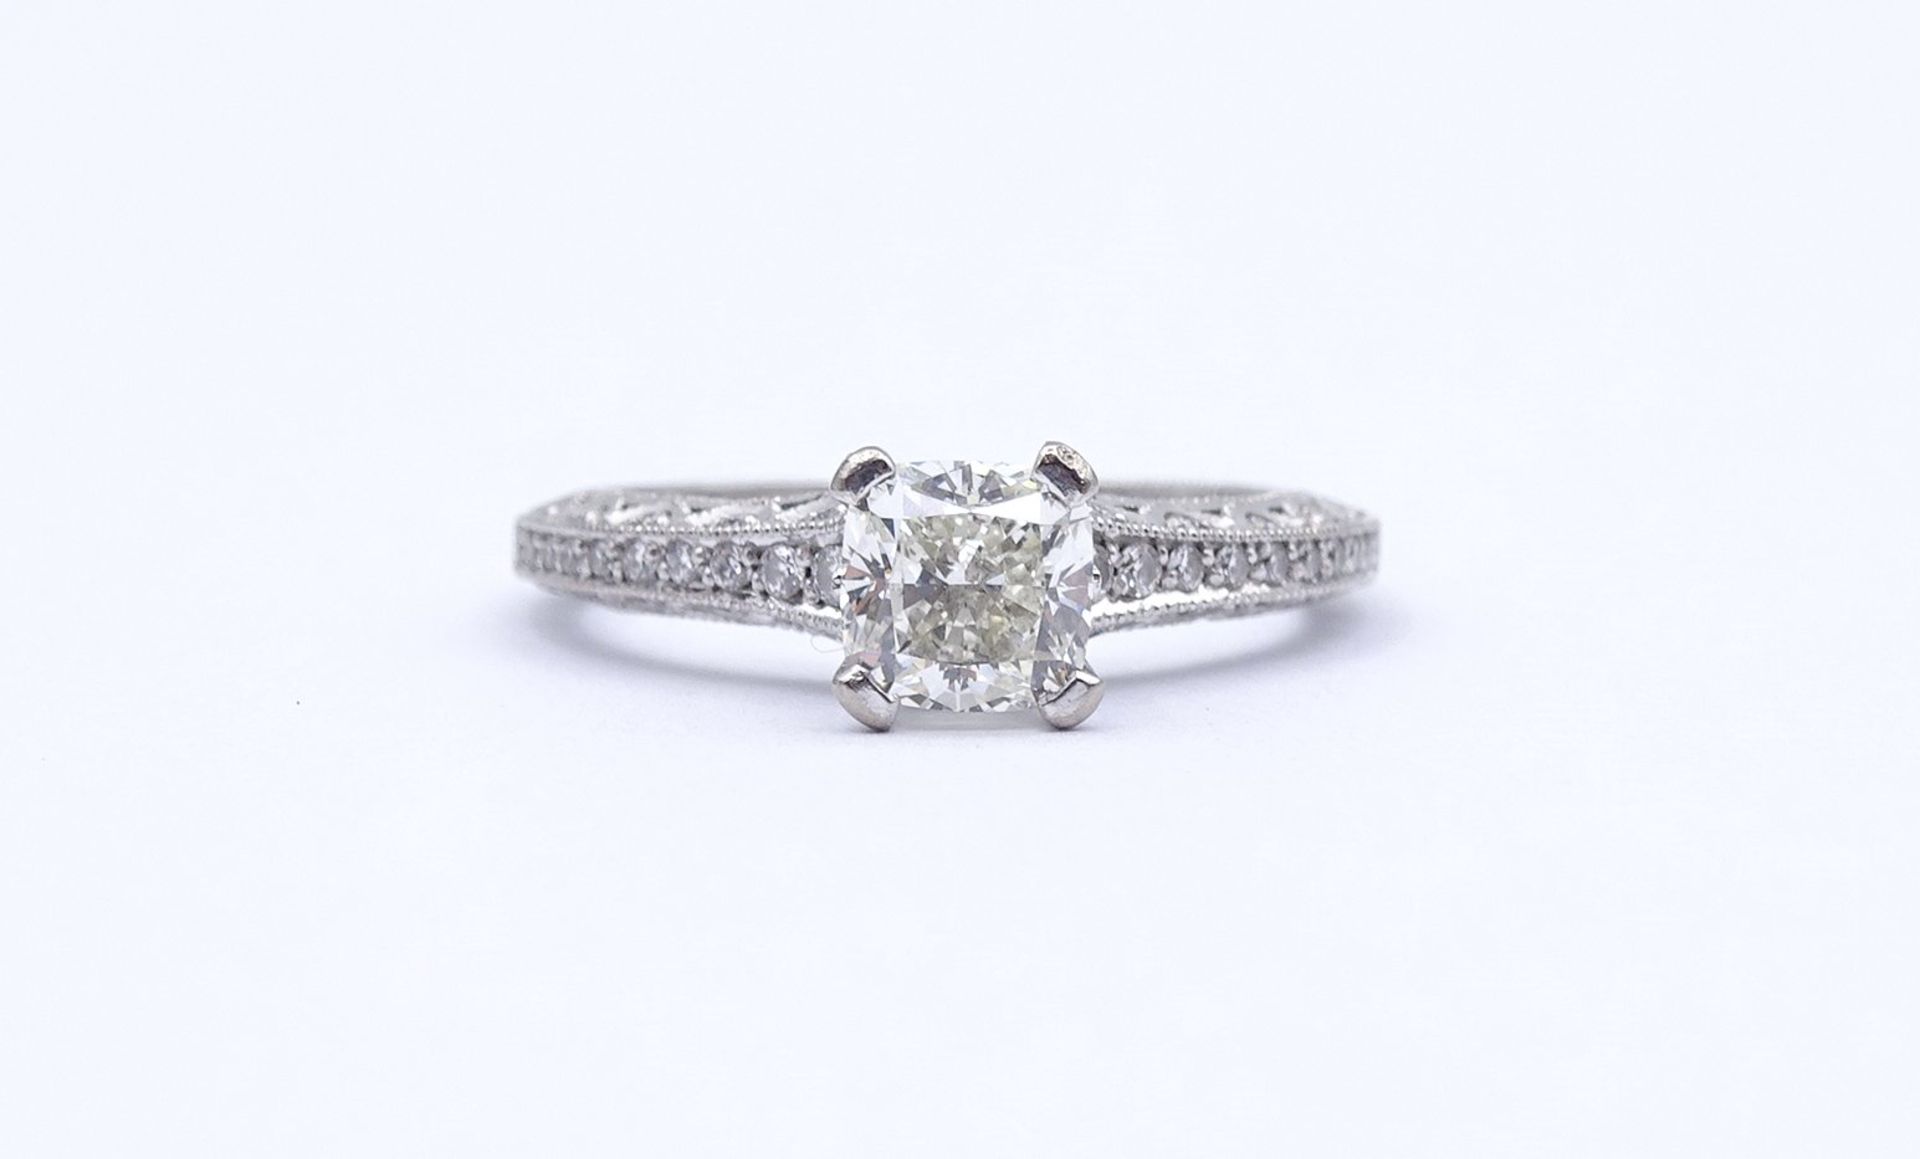 Princess Cut Ring - Verlobungsring , Princess 1,0ct., und 47 kl. Diamanten si, G-H, WG 18K "Tacori" - Image 13 of 20